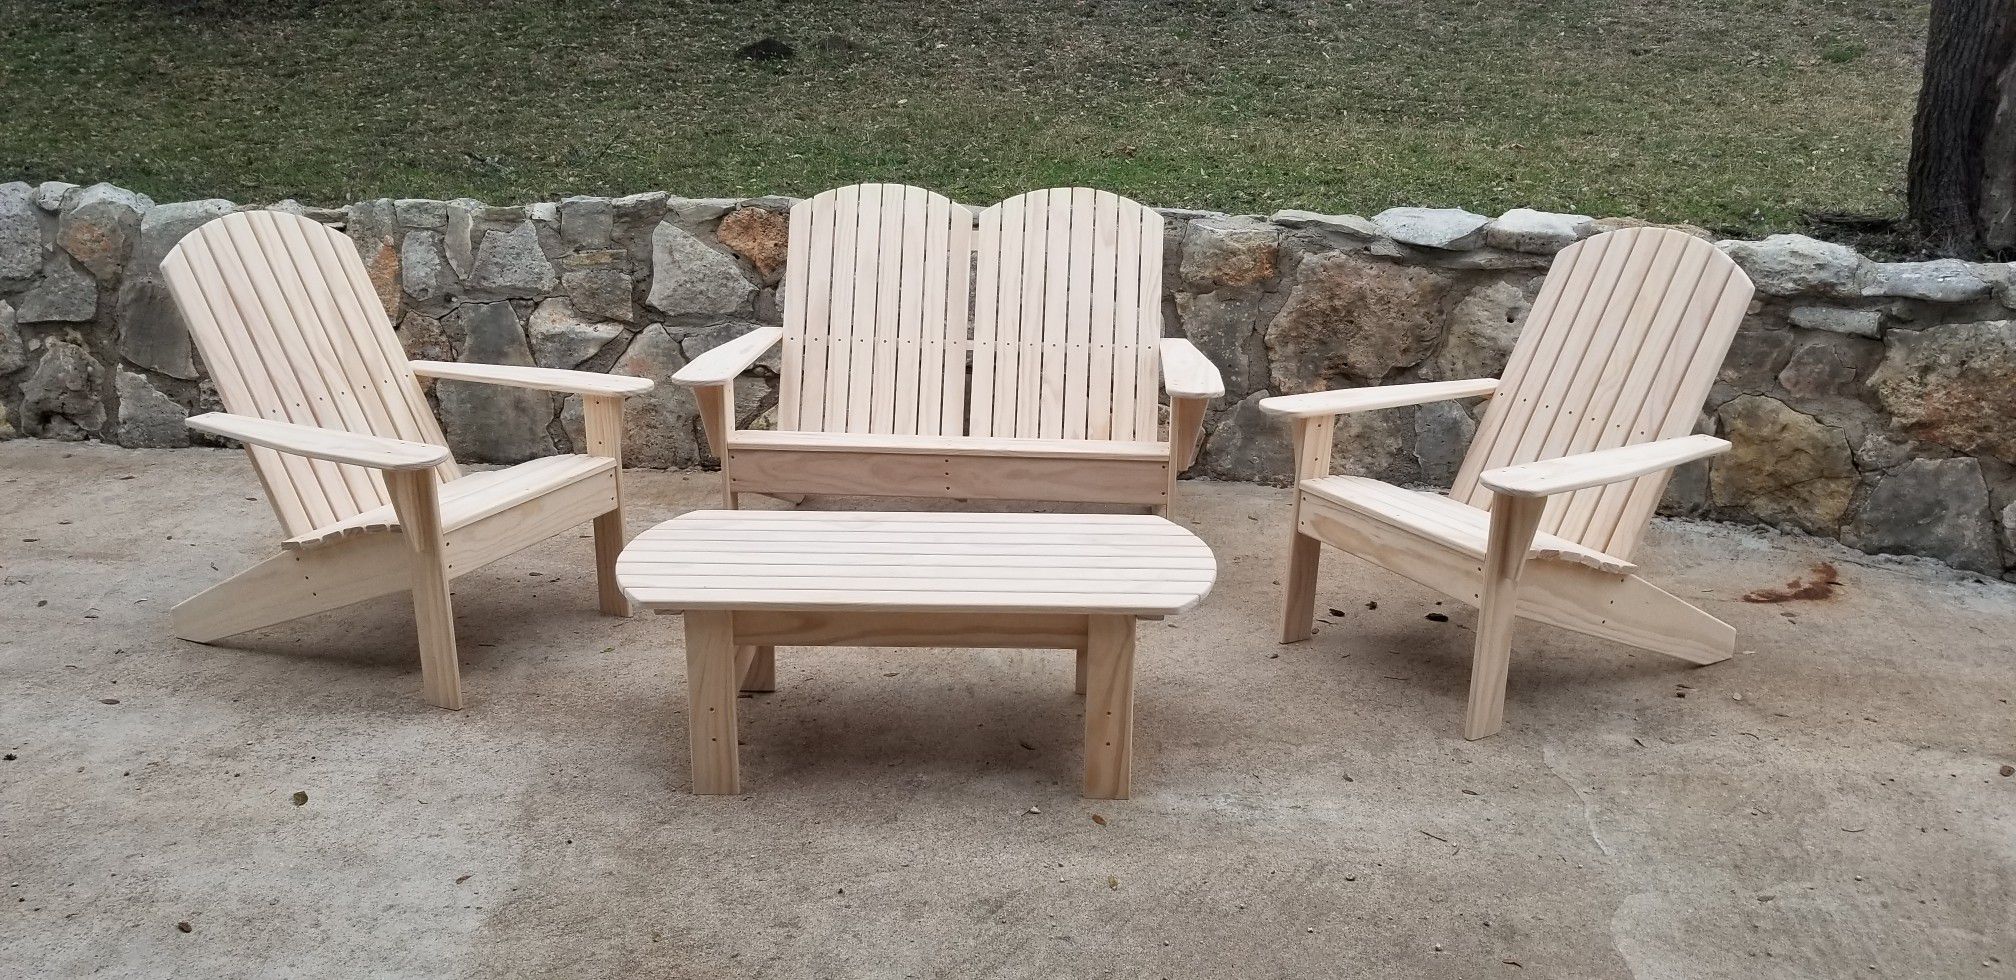 Adirondack patio furniture